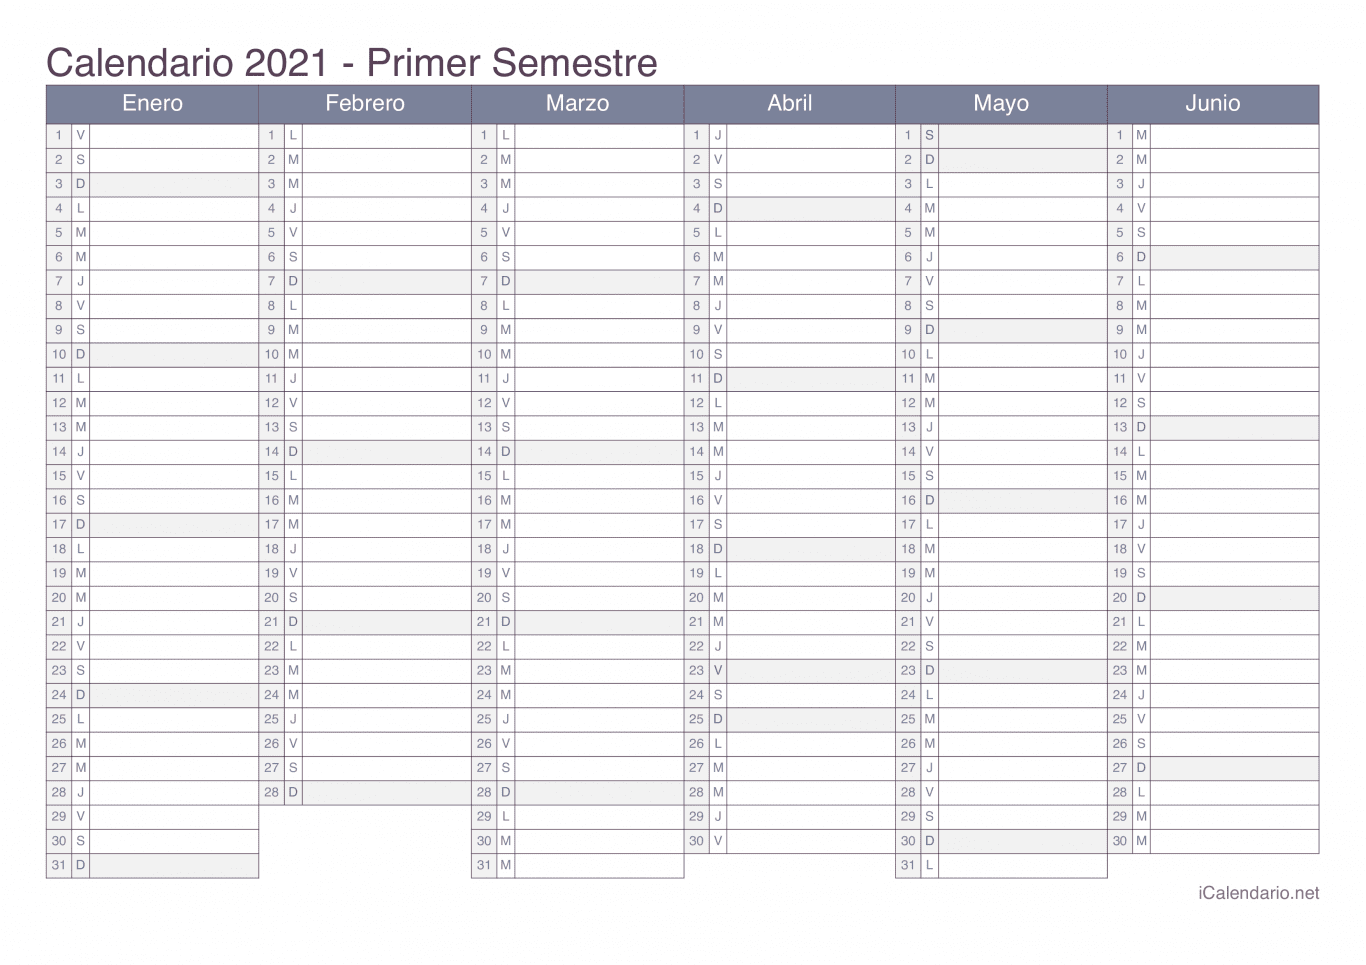 Calendario por semestre 2021 - Office